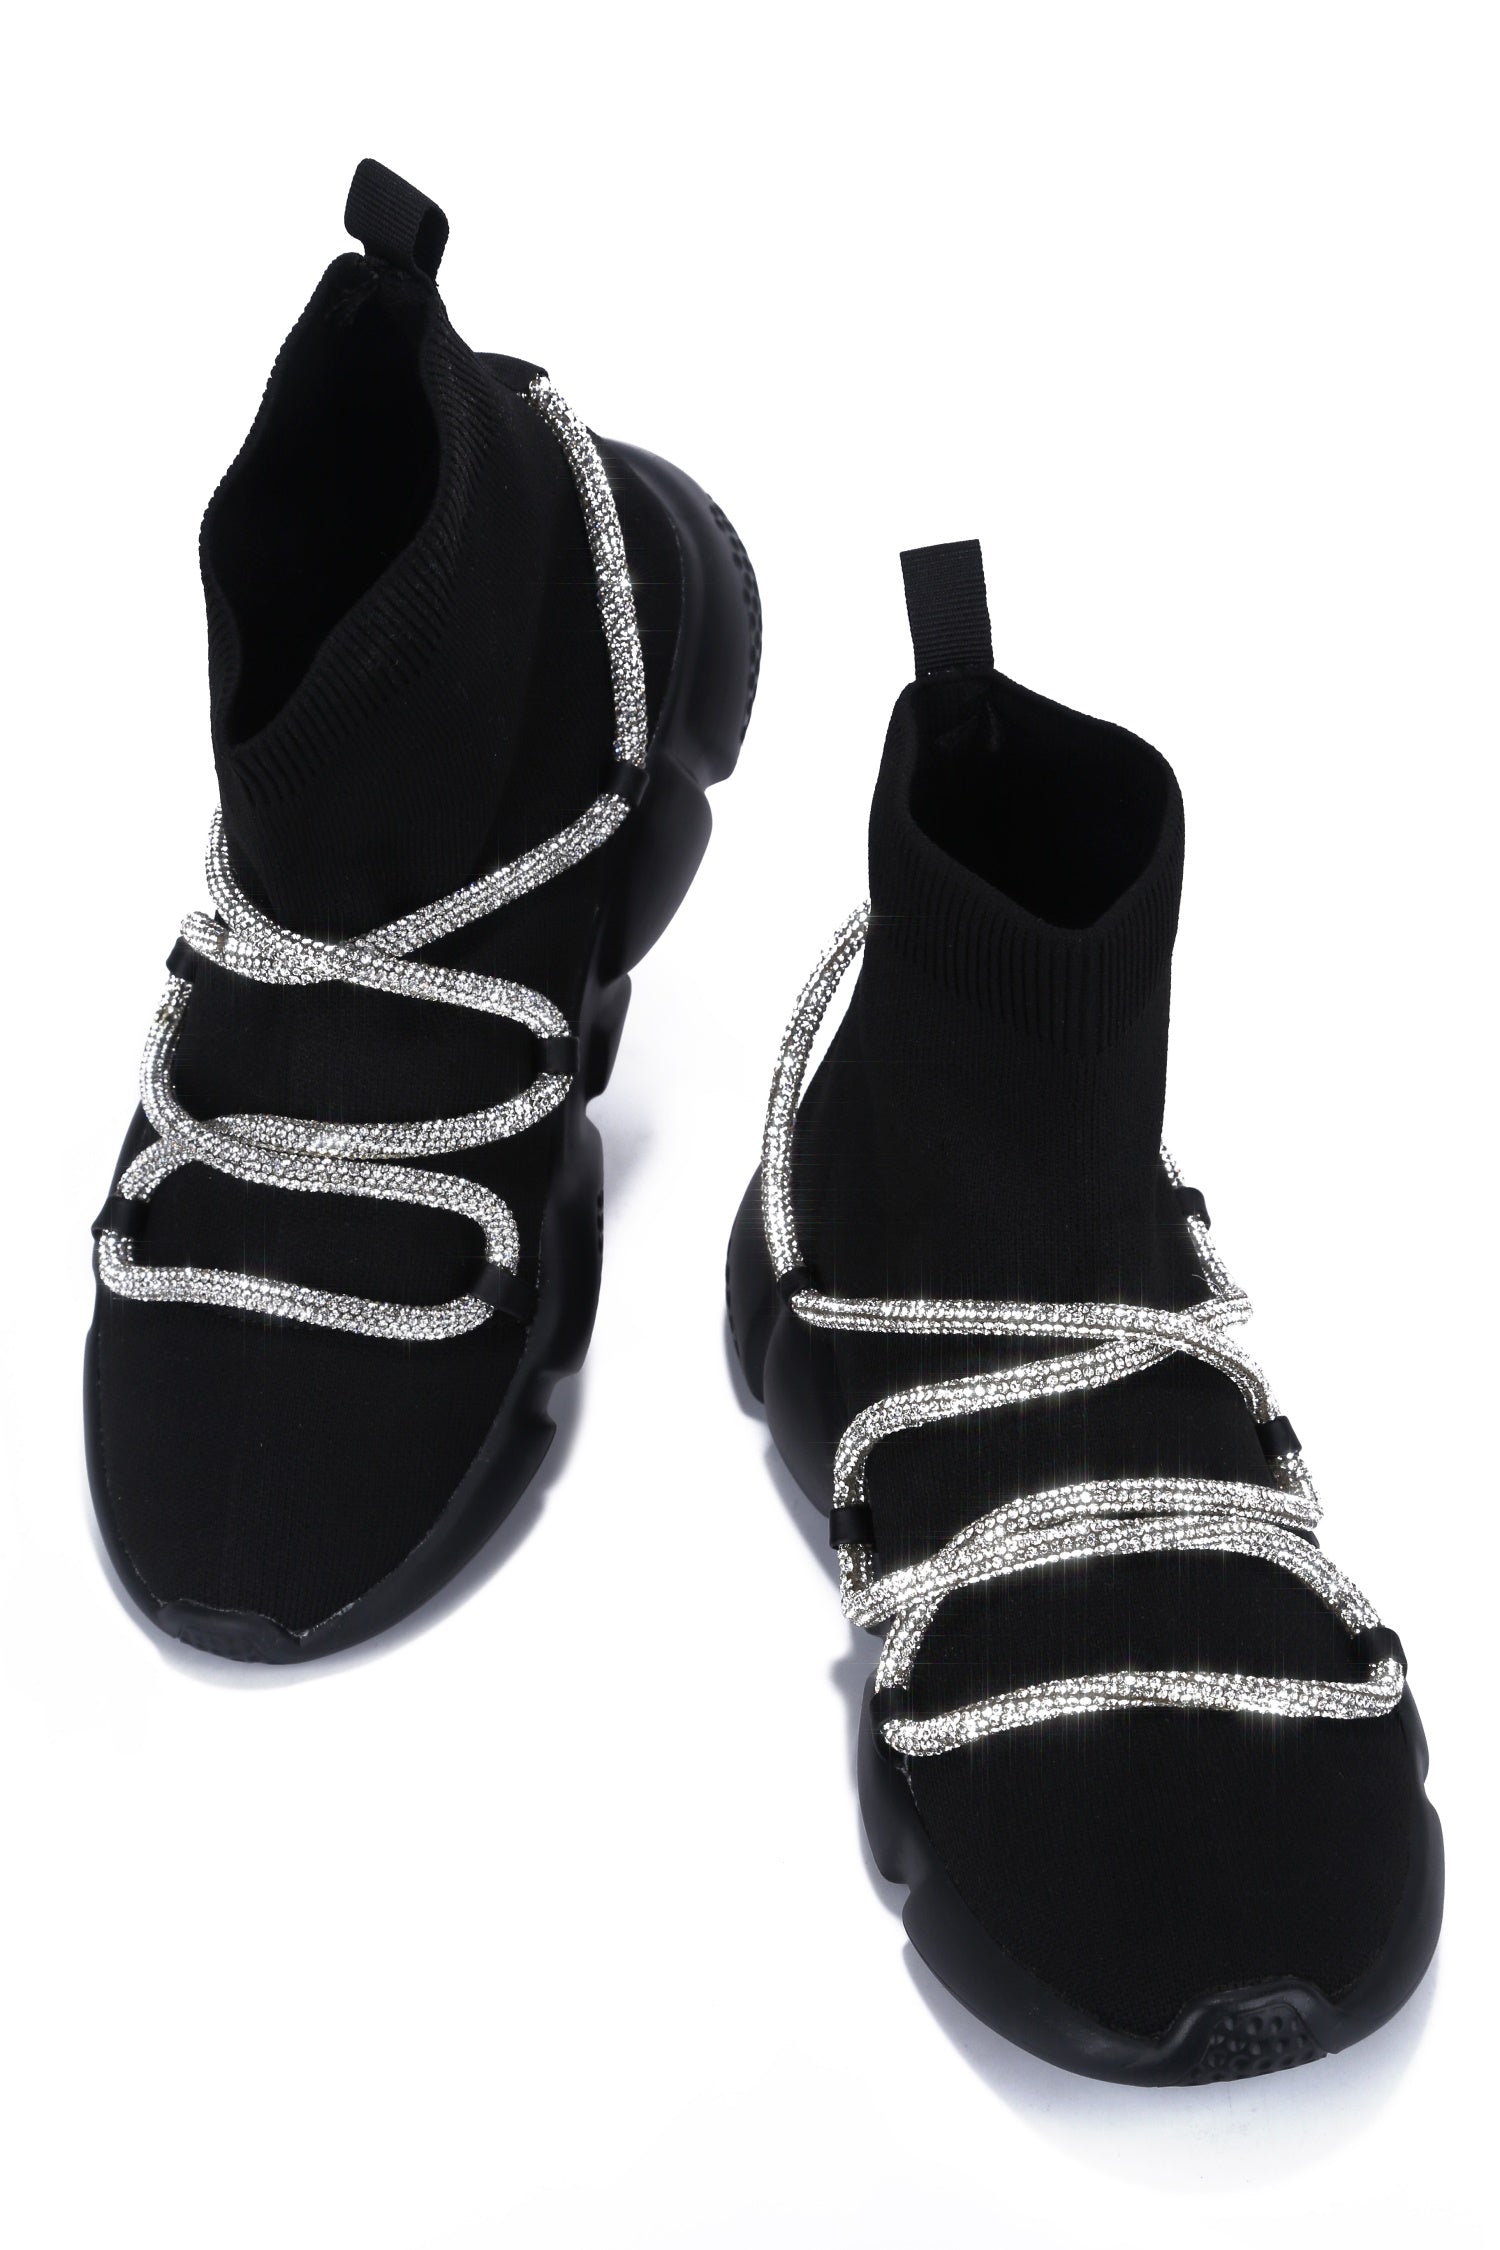 UrbanOG - Radiate Rhinestone Rope High Top Knit Sneaker - SNEAKERS